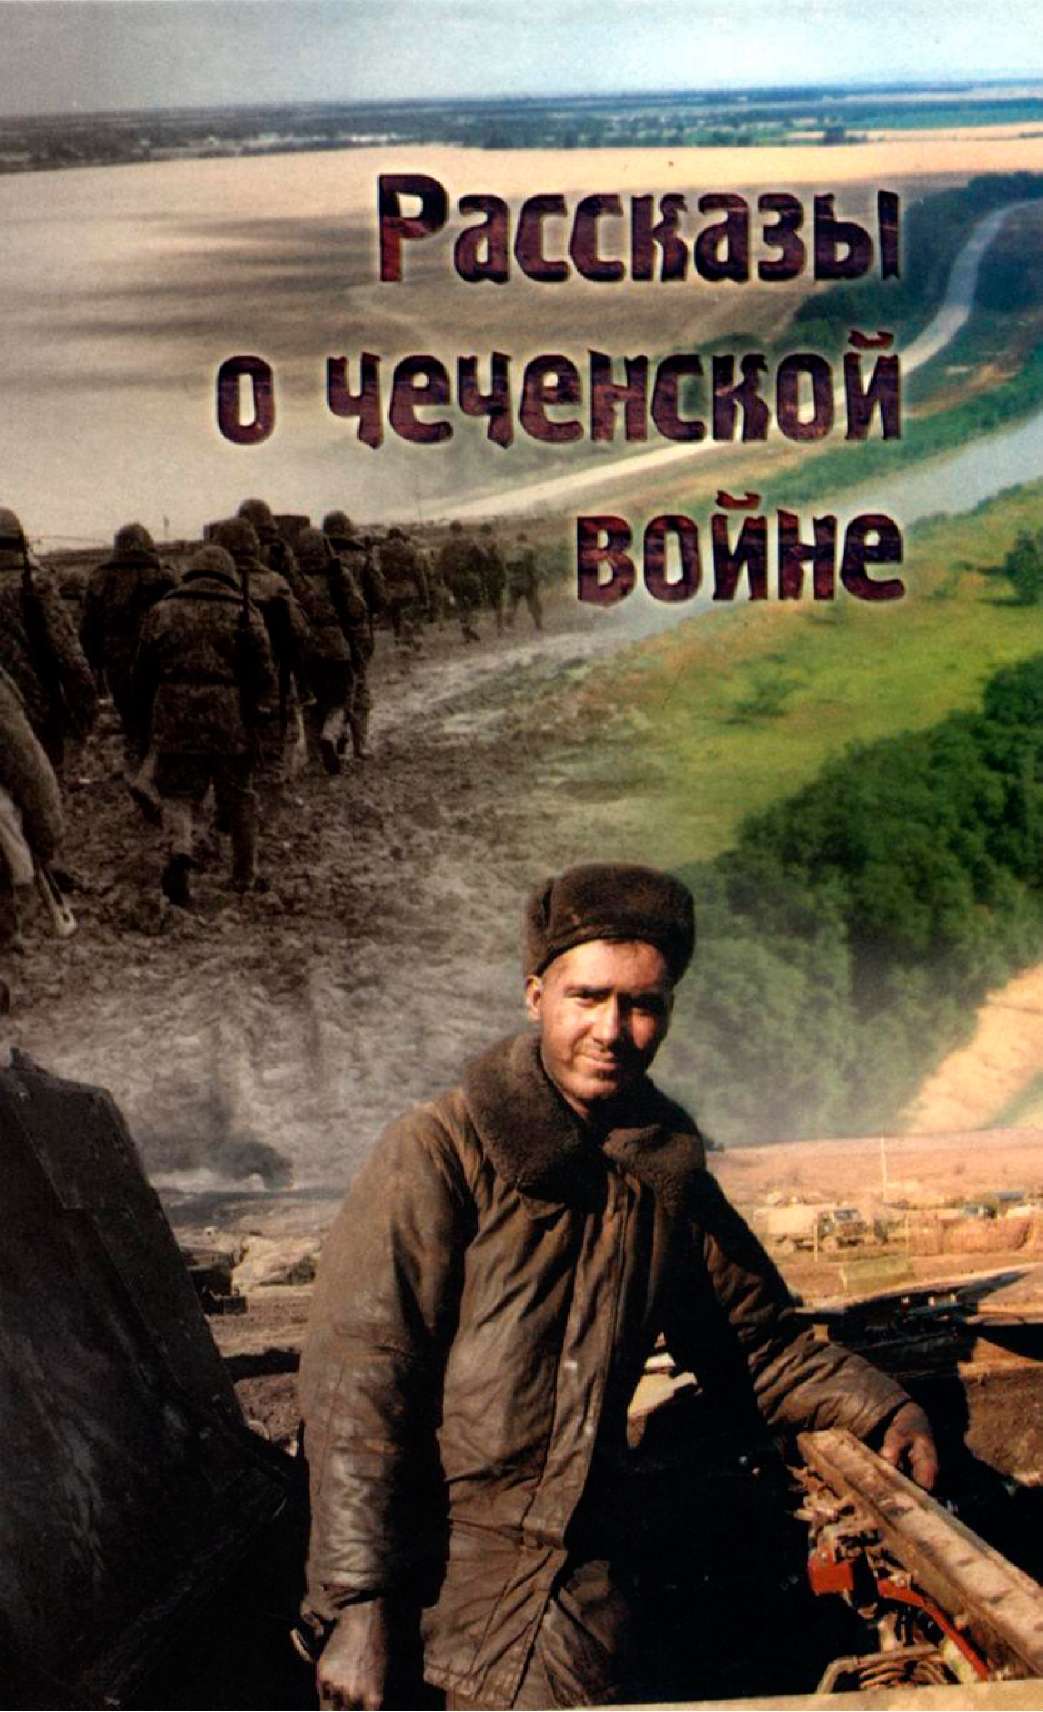 Скачать бесплатно книгу про чеченскую войну